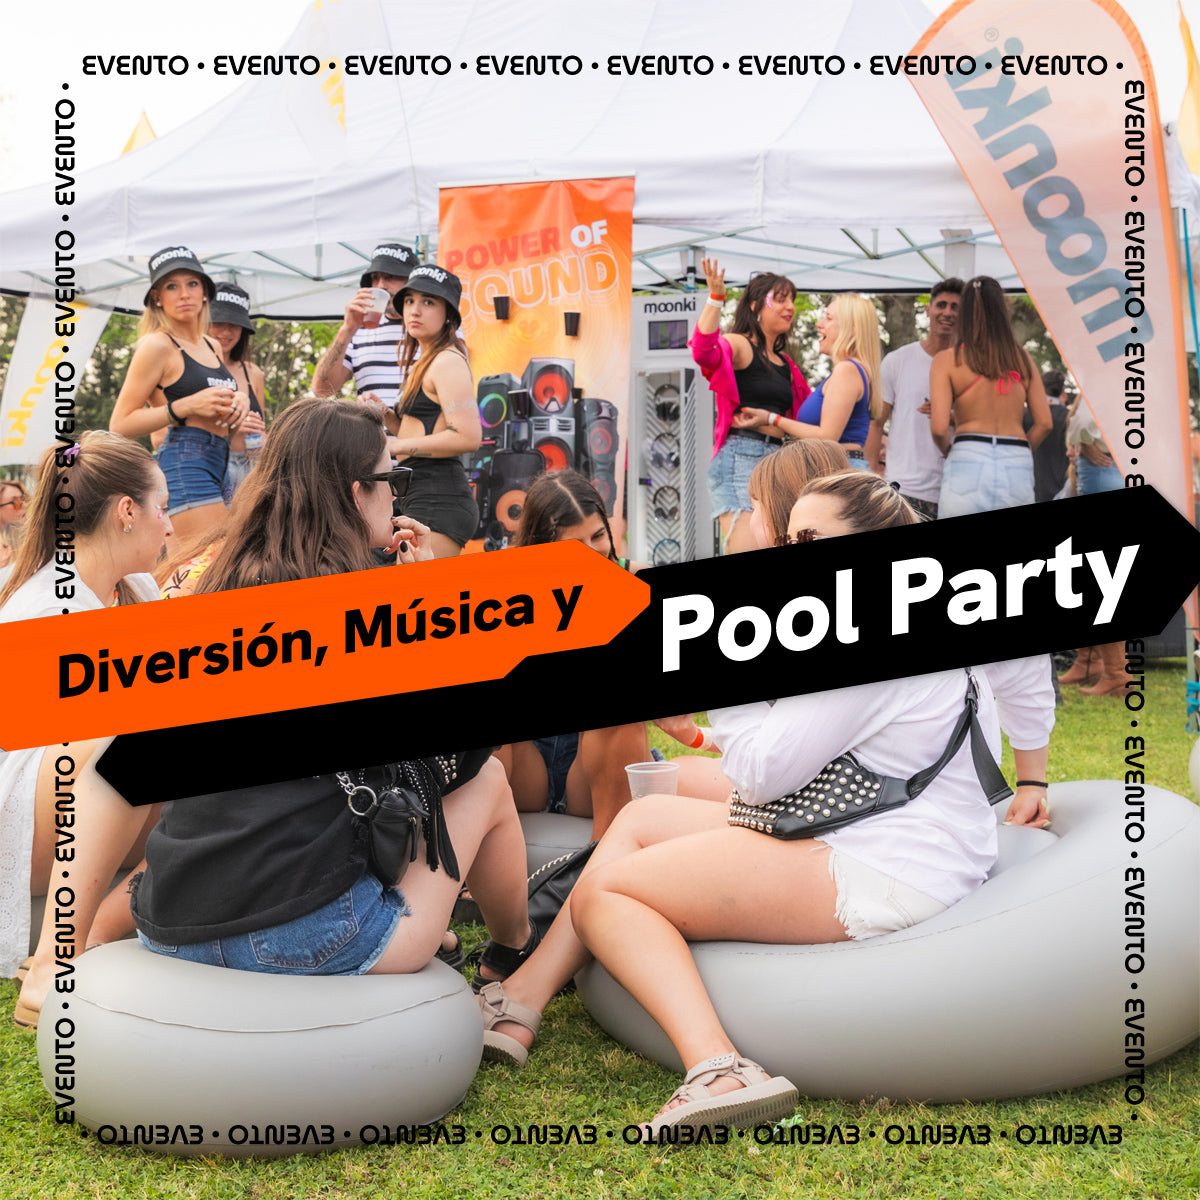 ¡Día de diversión y música en la pool party con Moonki!